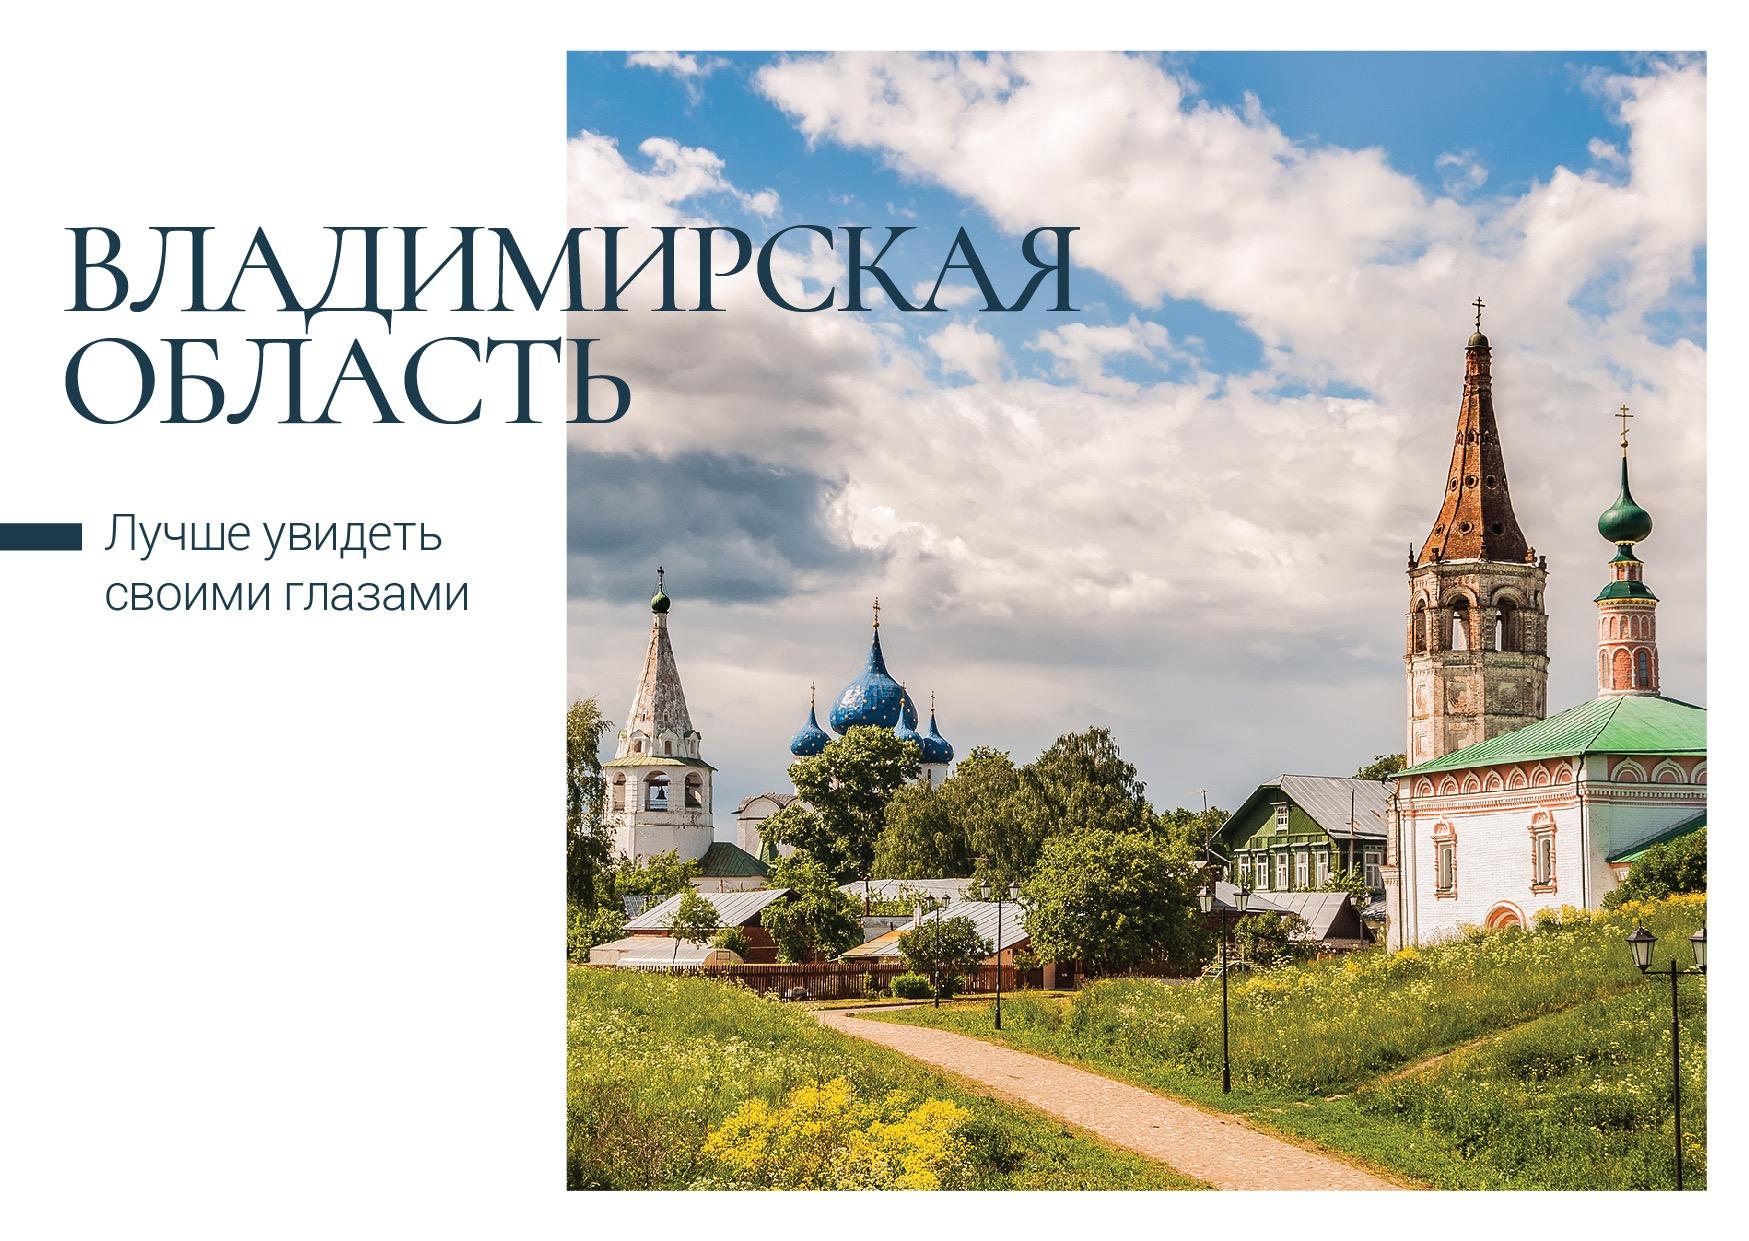 Почта России выпустила открытки с достопримечательностями Владимирской области